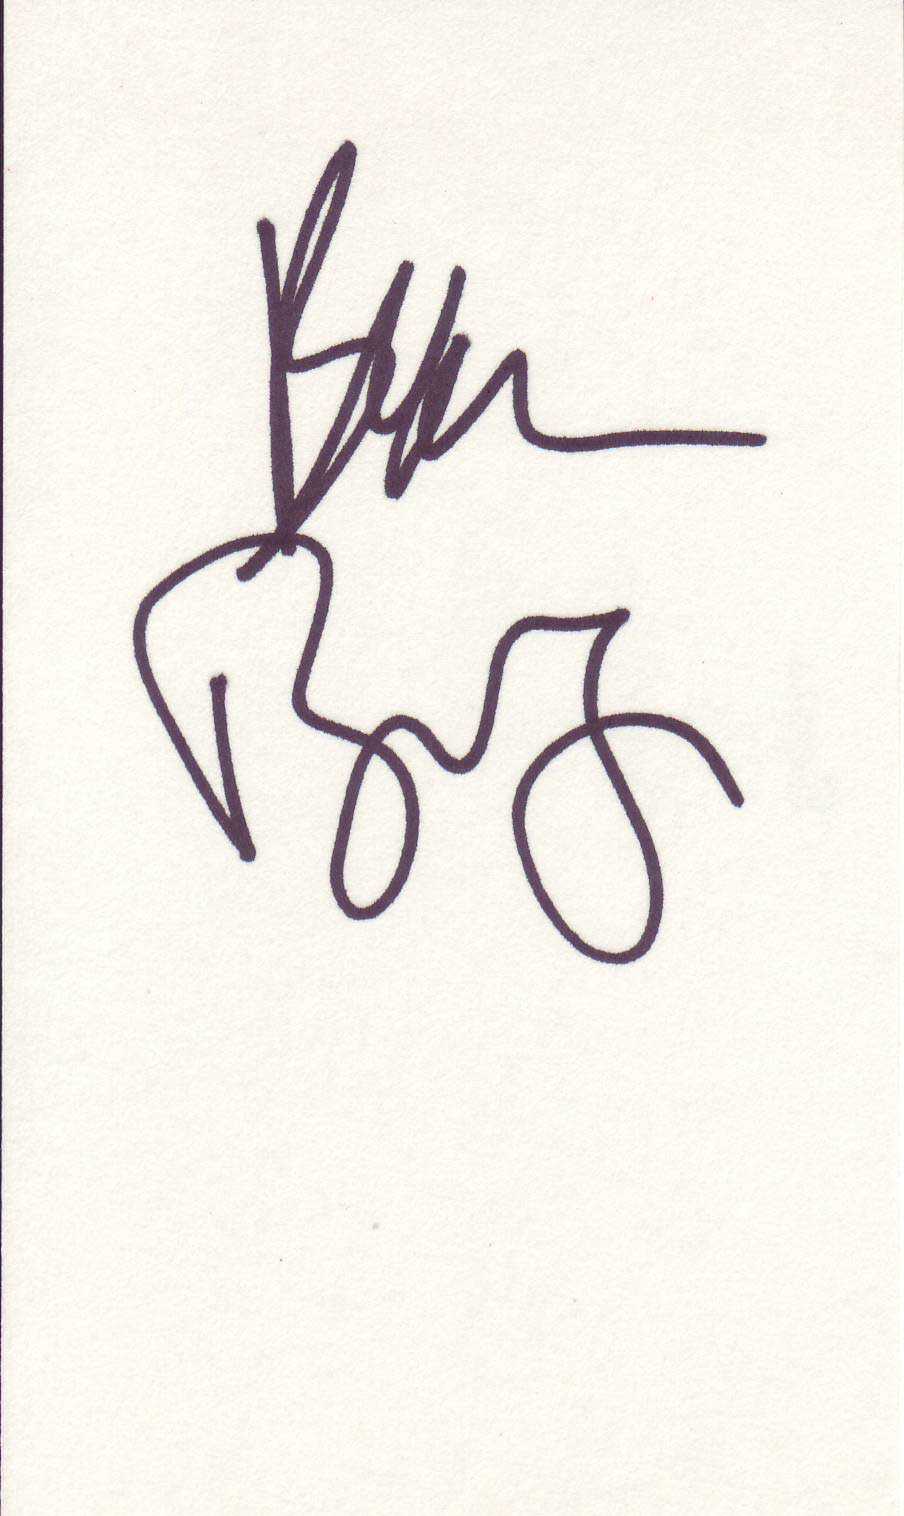 Beau Bridges Autographed 3x5 Index Card